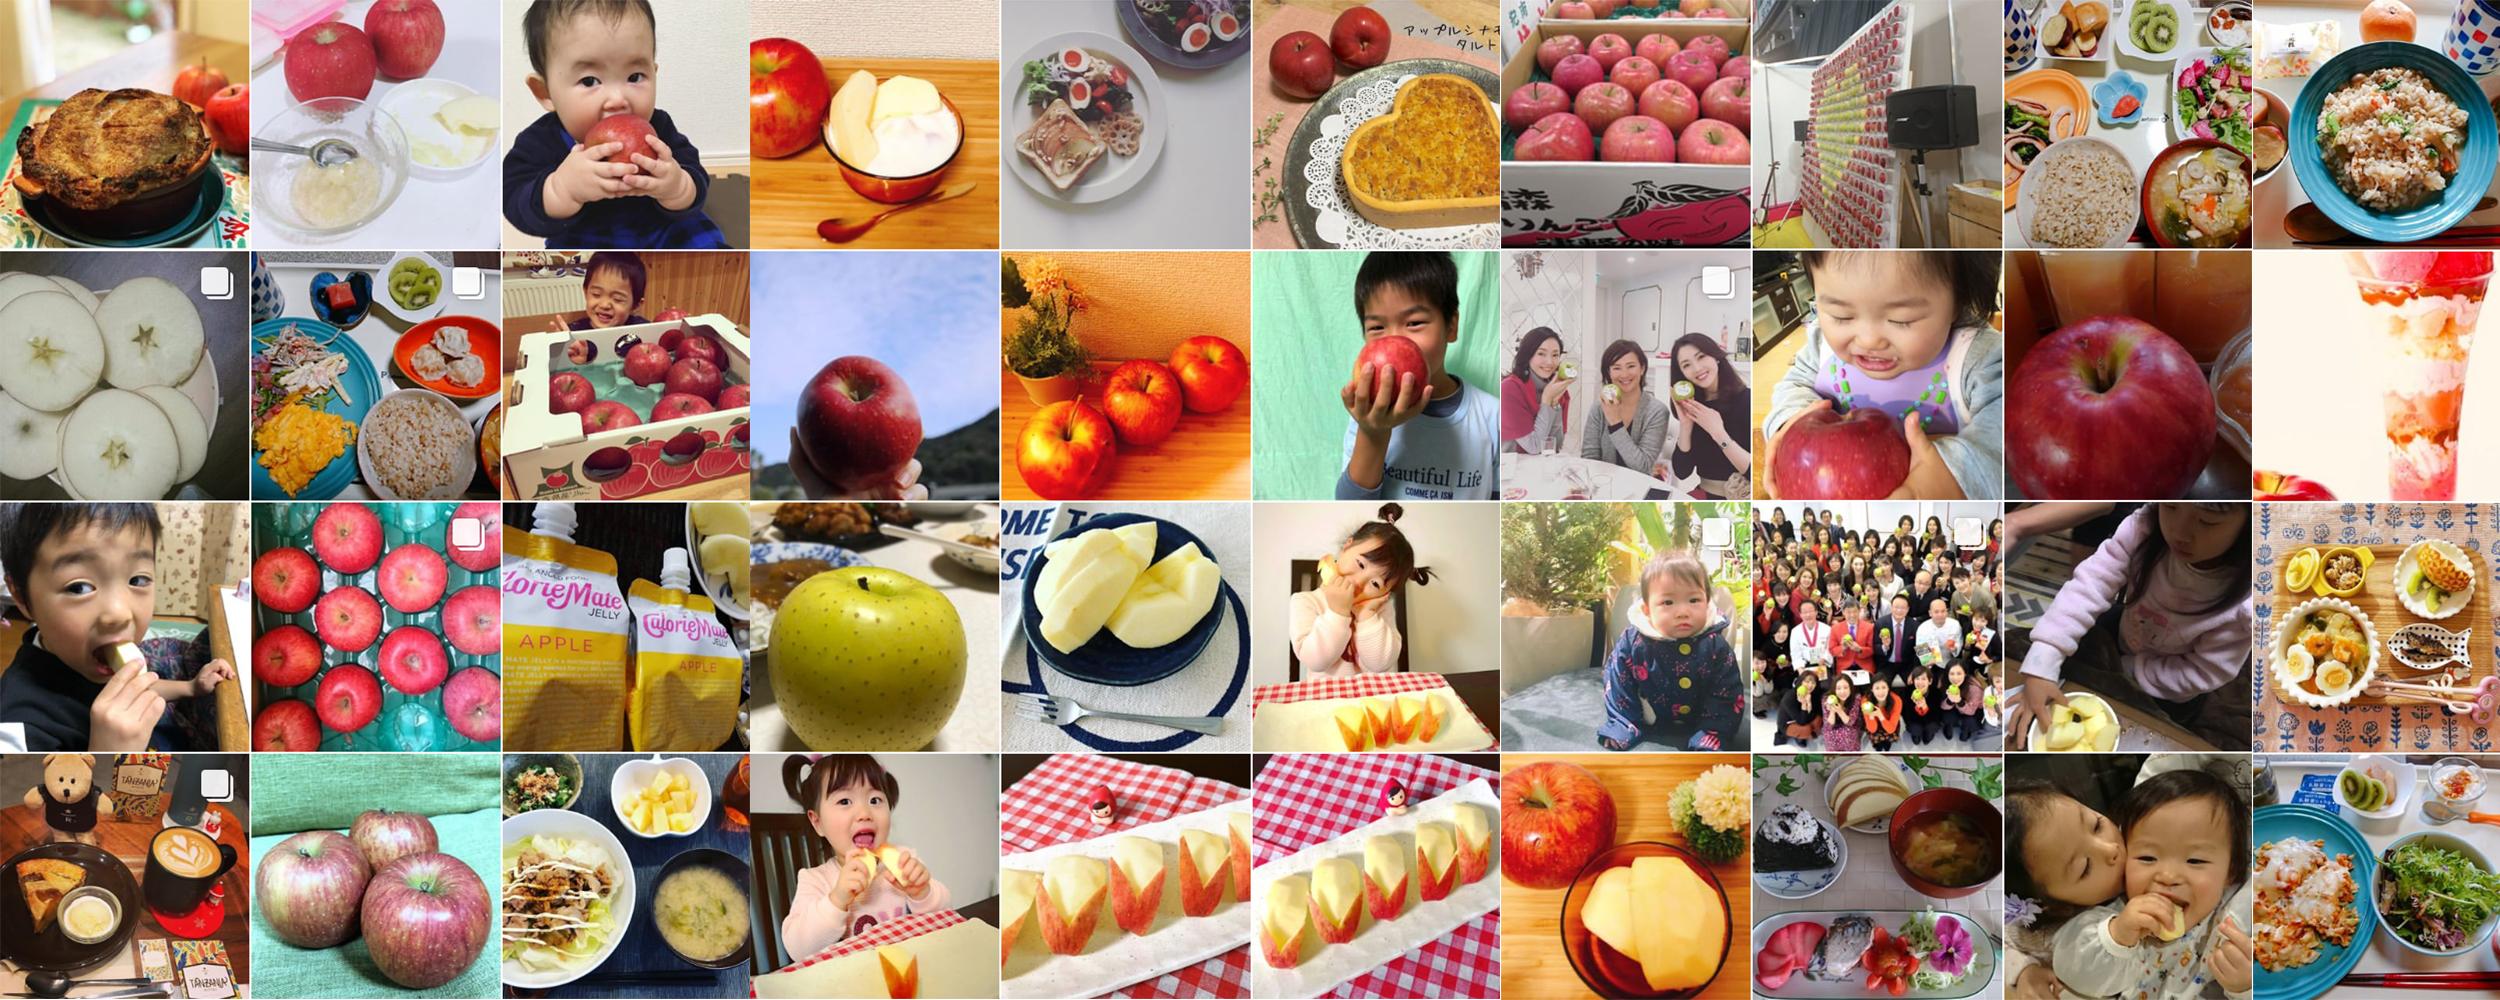 私の美活は食べるだけ青森りんごキャンペーン1月 投稿写真